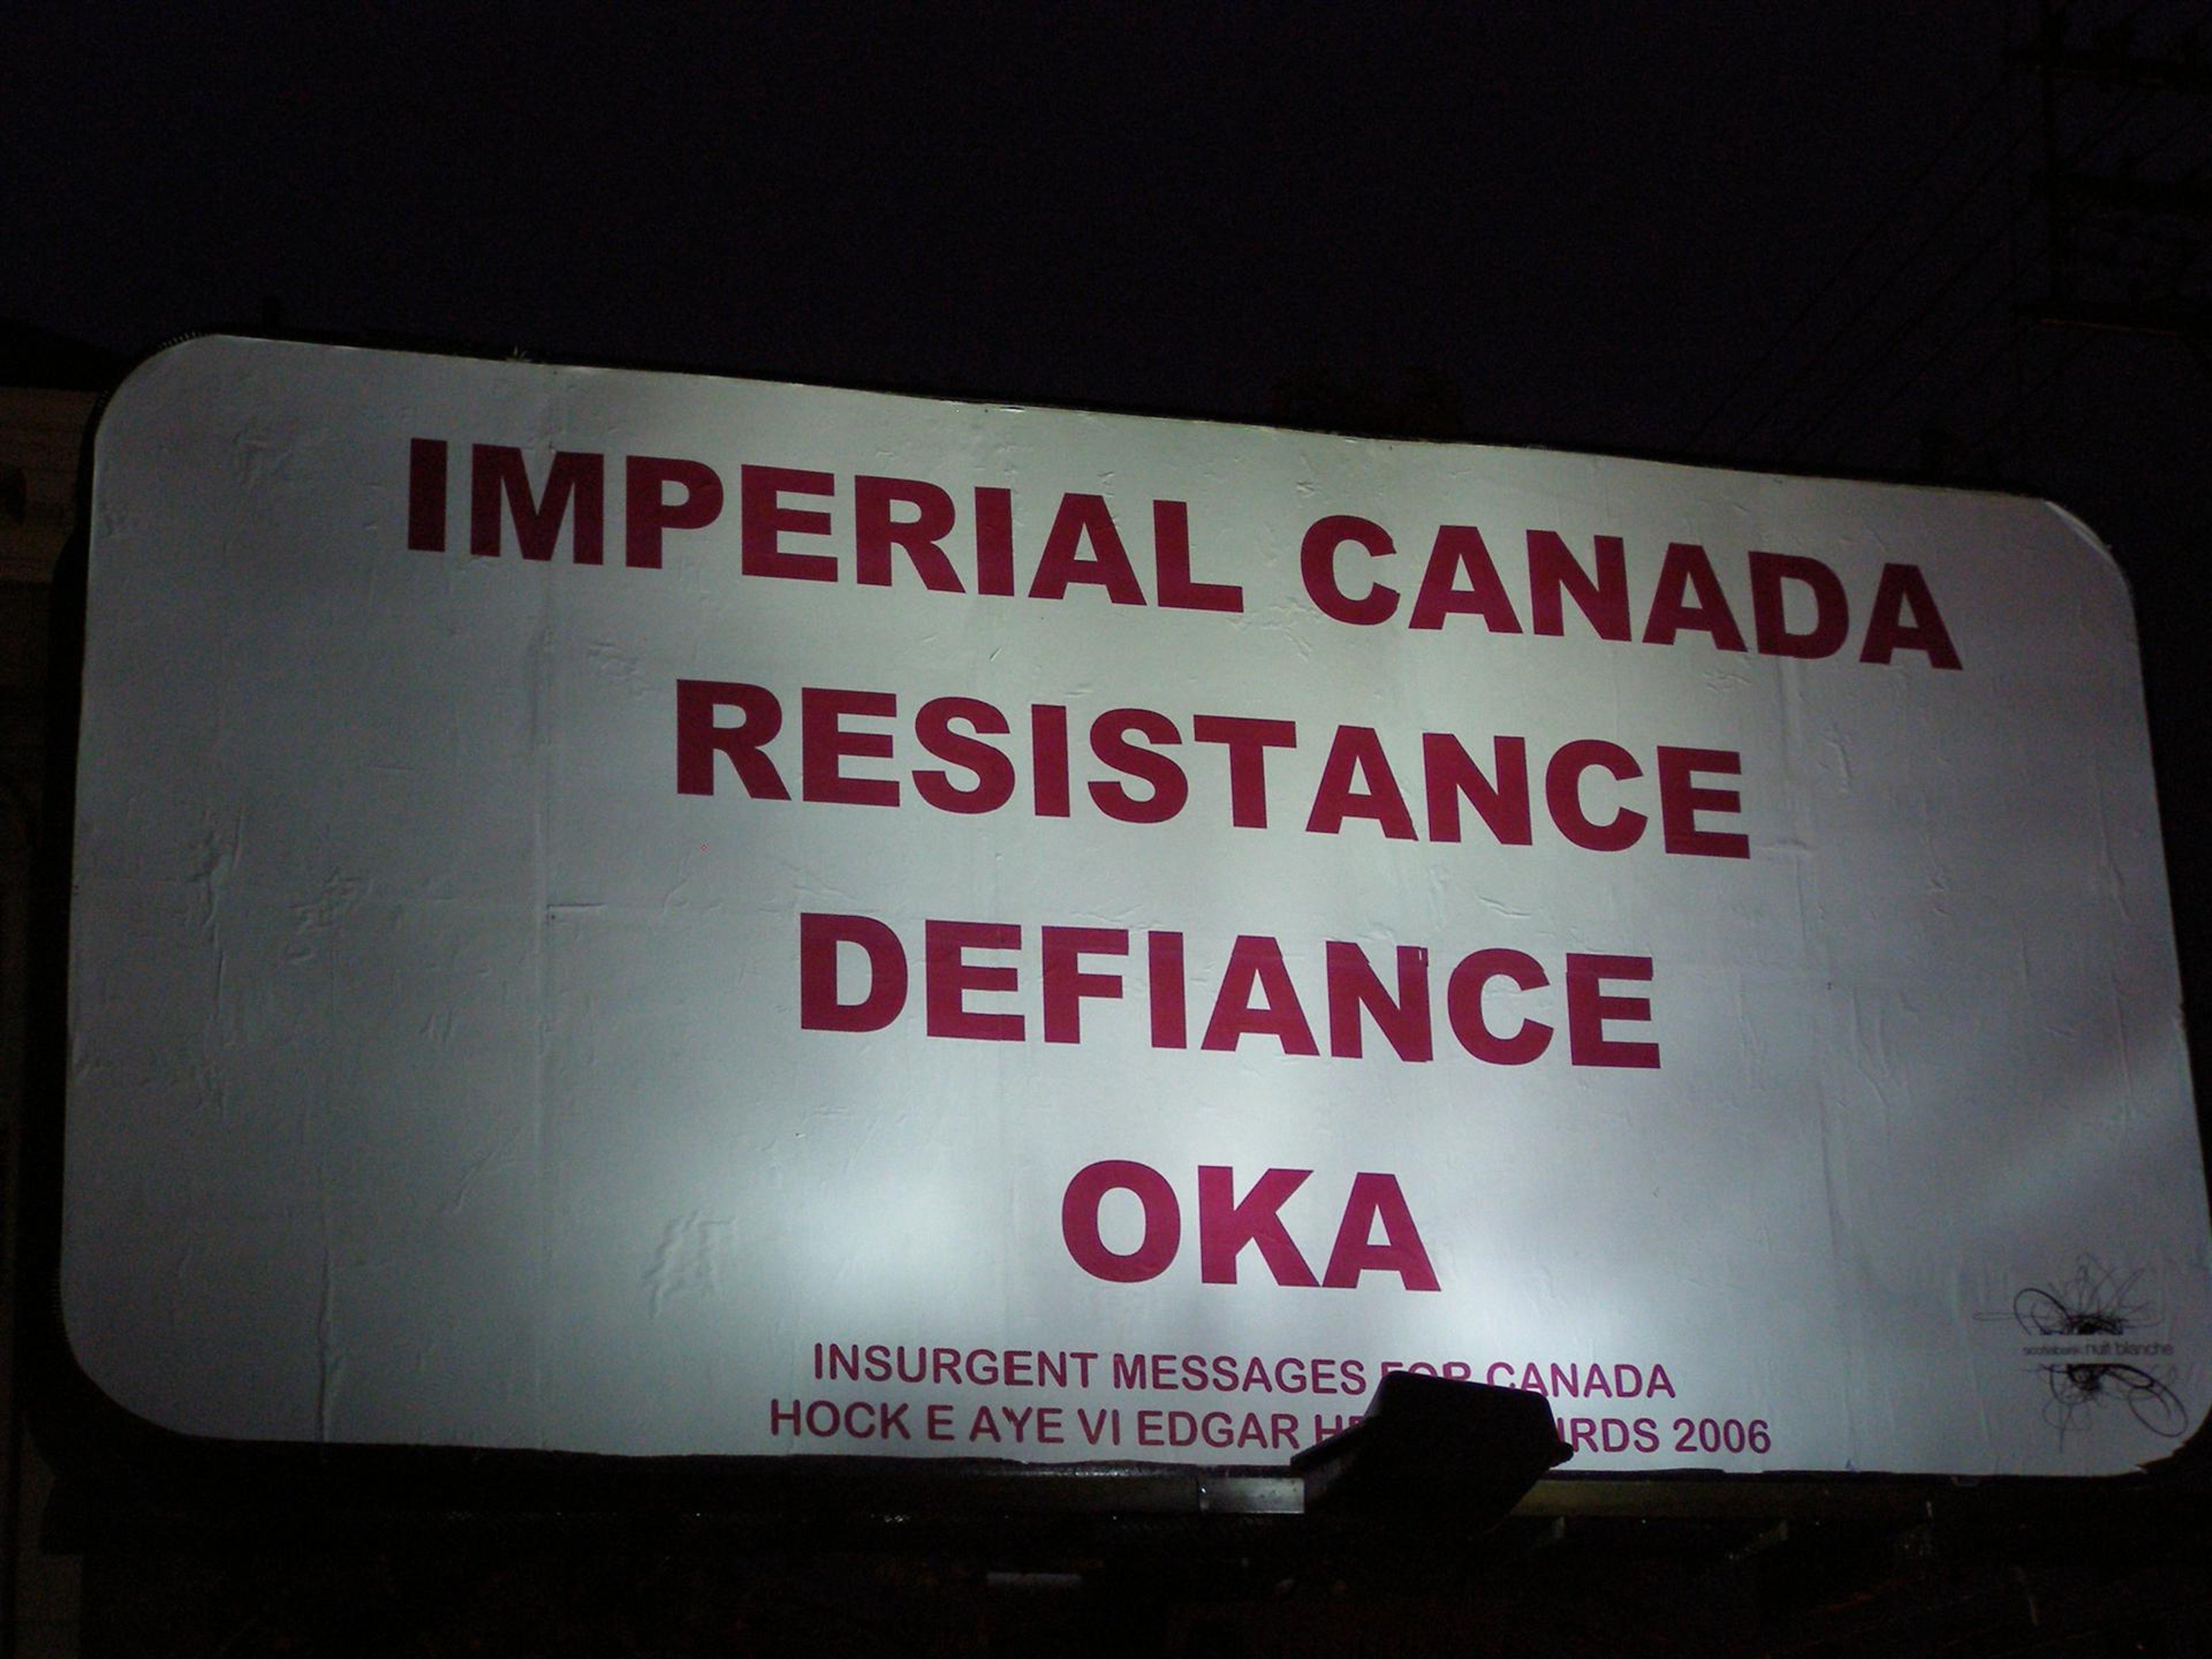 On a billboard: 